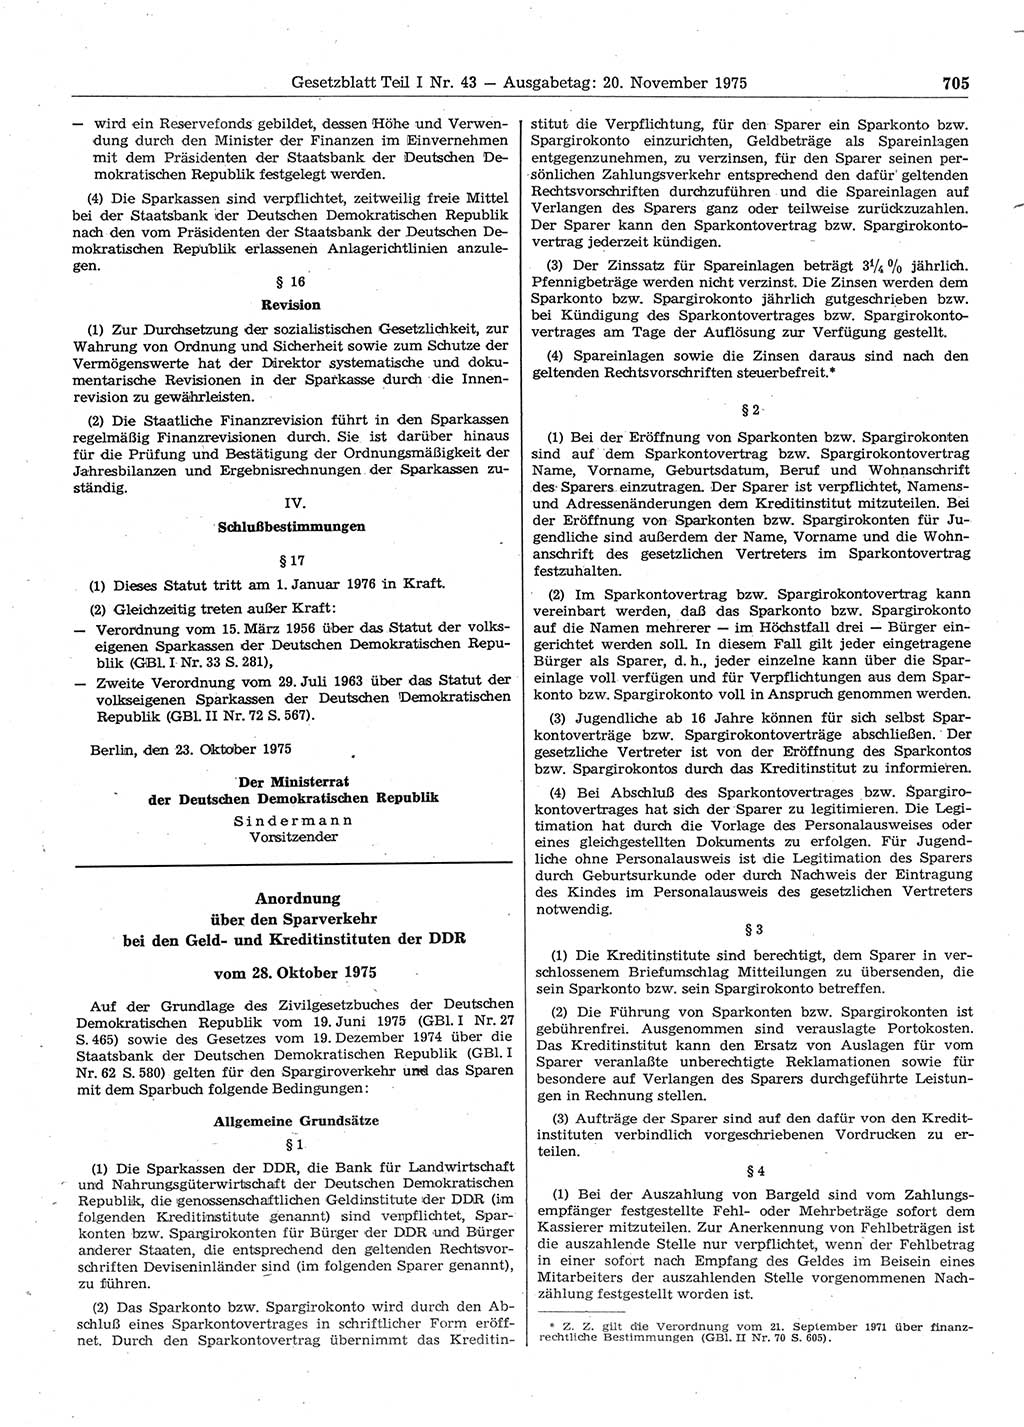 Gesetzblatt (GBl.) der Deutschen Demokratischen Republik (DDR) Teil Ⅰ 1975, Seite 705 (GBl. DDR Ⅰ 1975, S. 705)